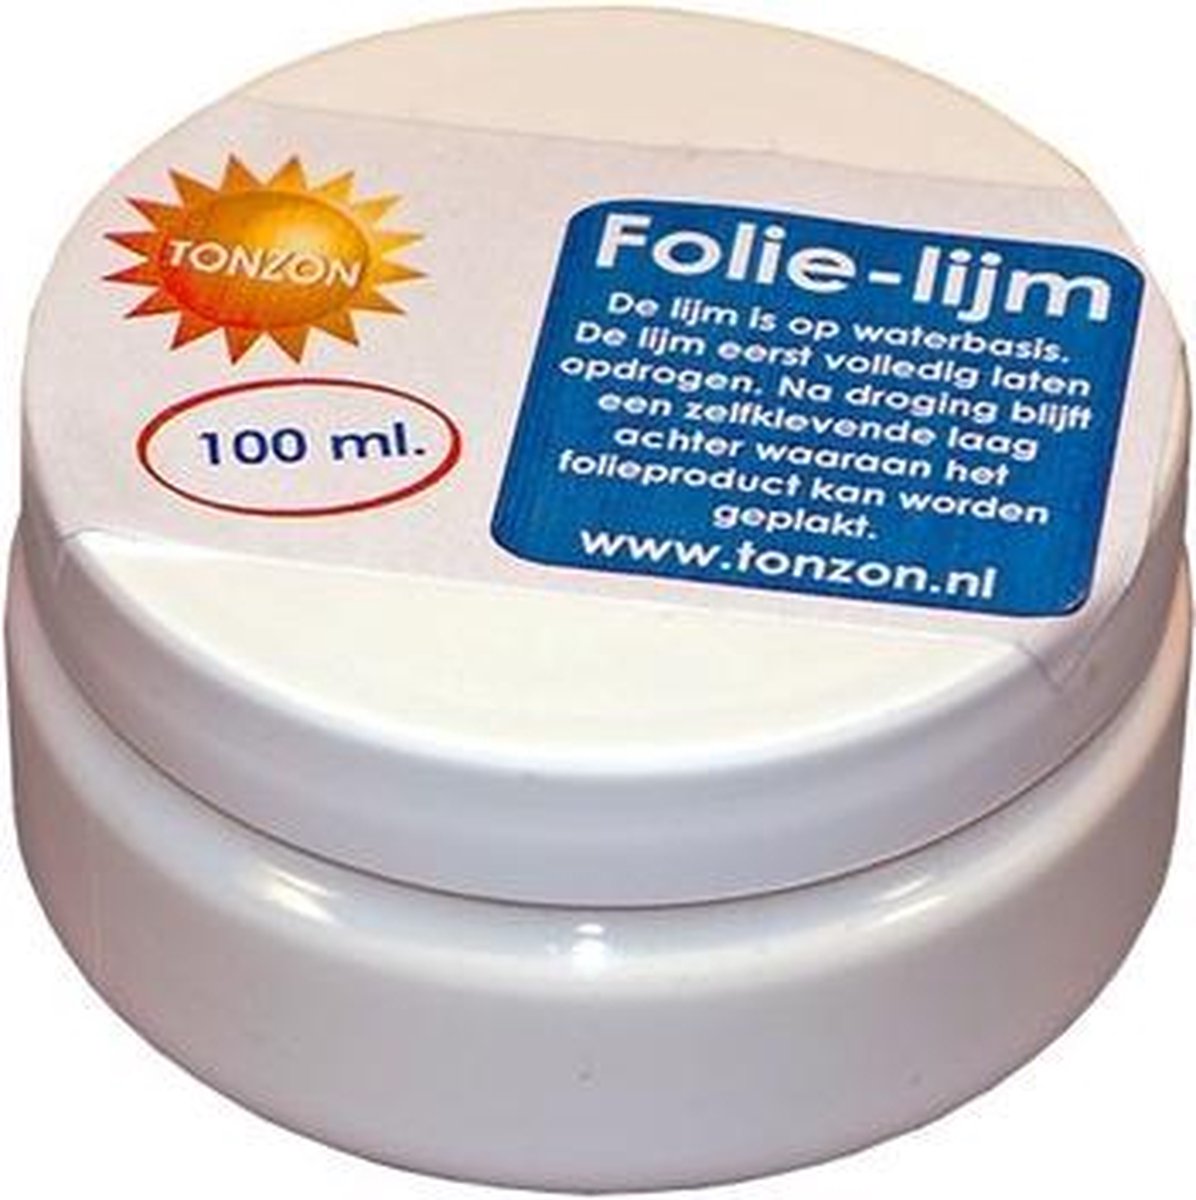 Folielijm - 100 ml - 100